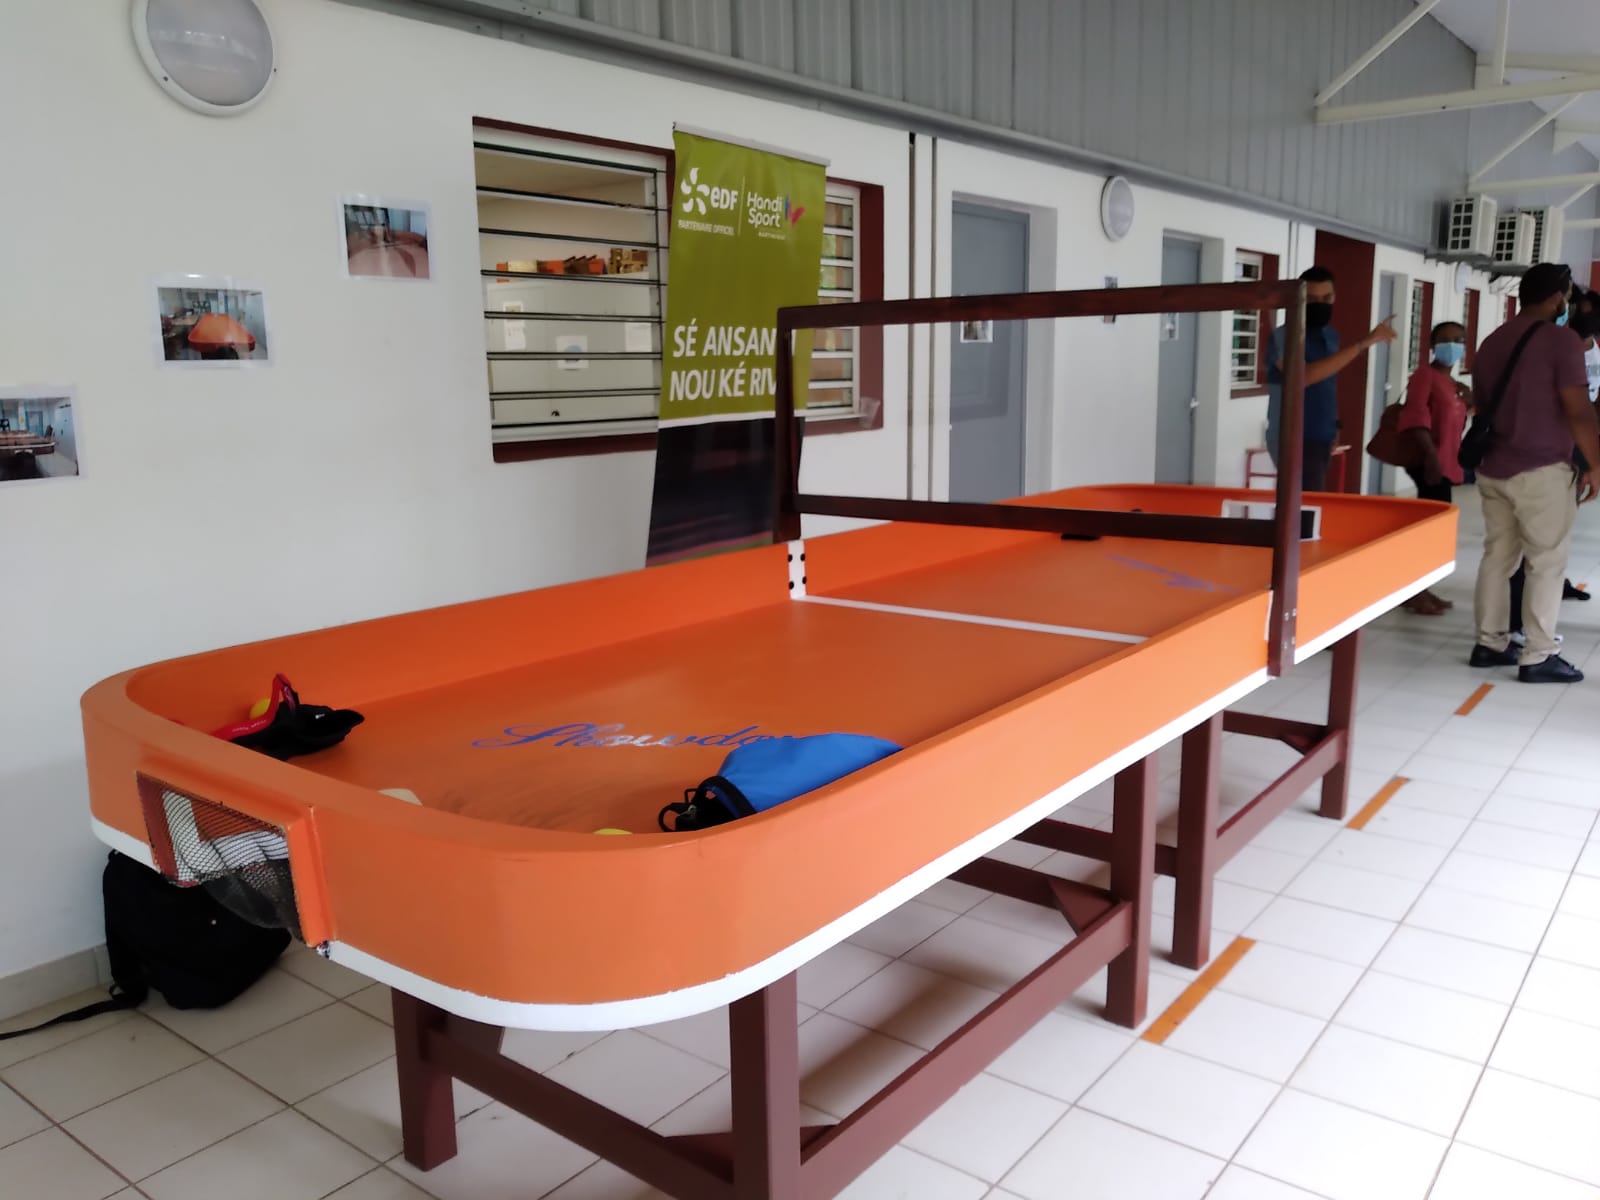     [VIDEO] Le Showdown, un tennis de table pour les déficients visuels inauguré à Rivière-Pilote

